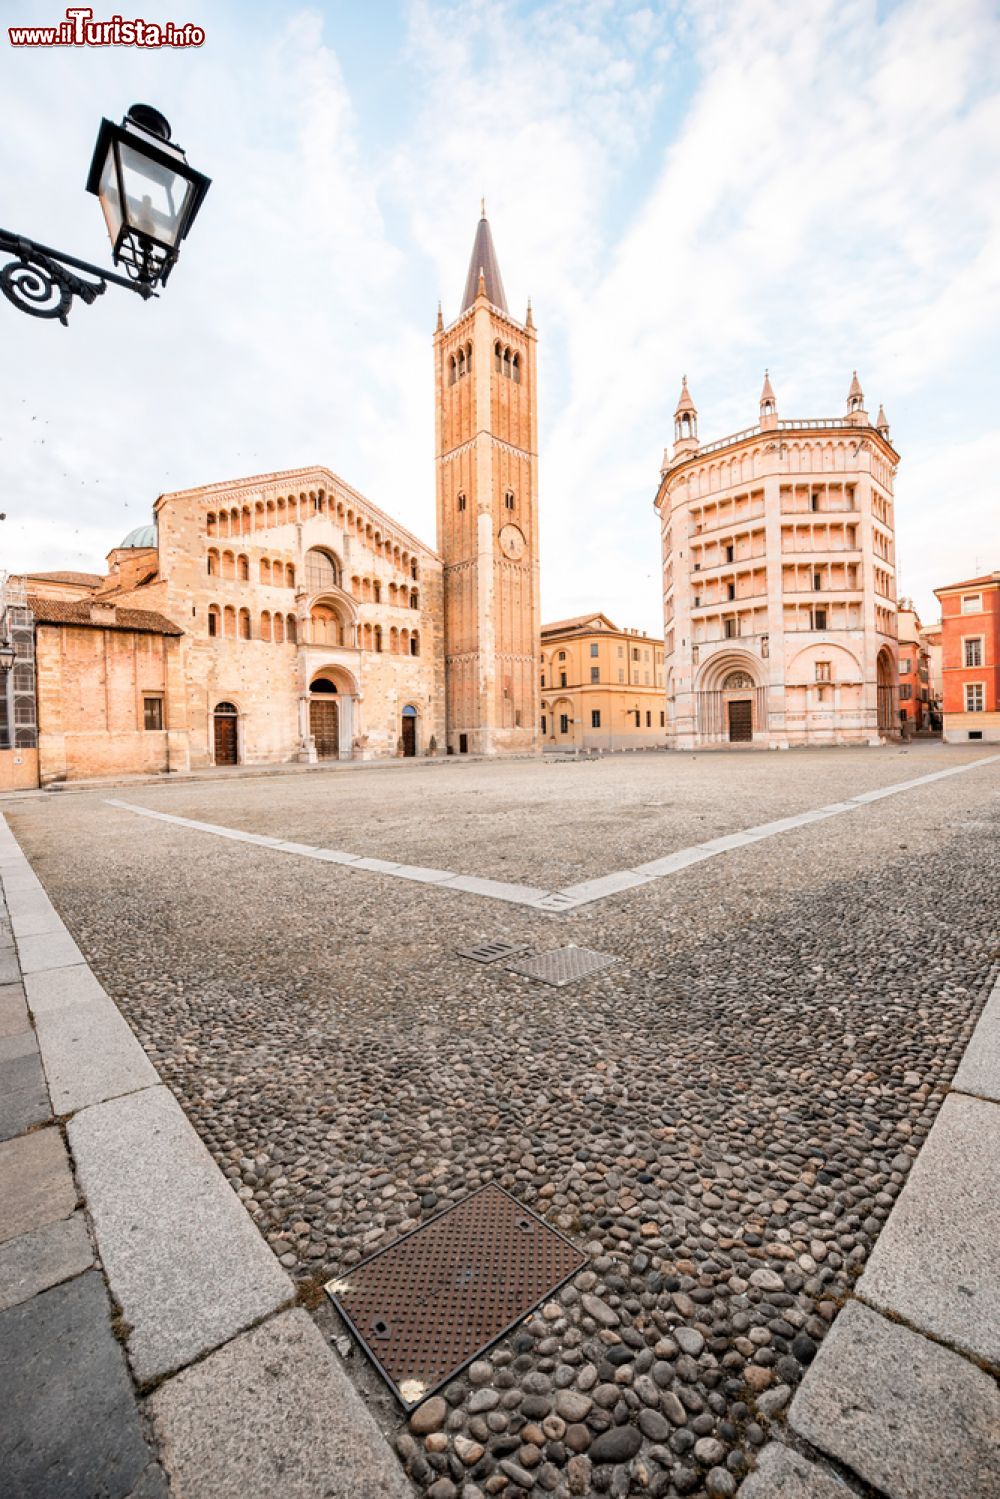 Immagine La piazza del Duomo a Parma con il Battistero e la Cattedrale - © RossHelen / Shutterstock.com